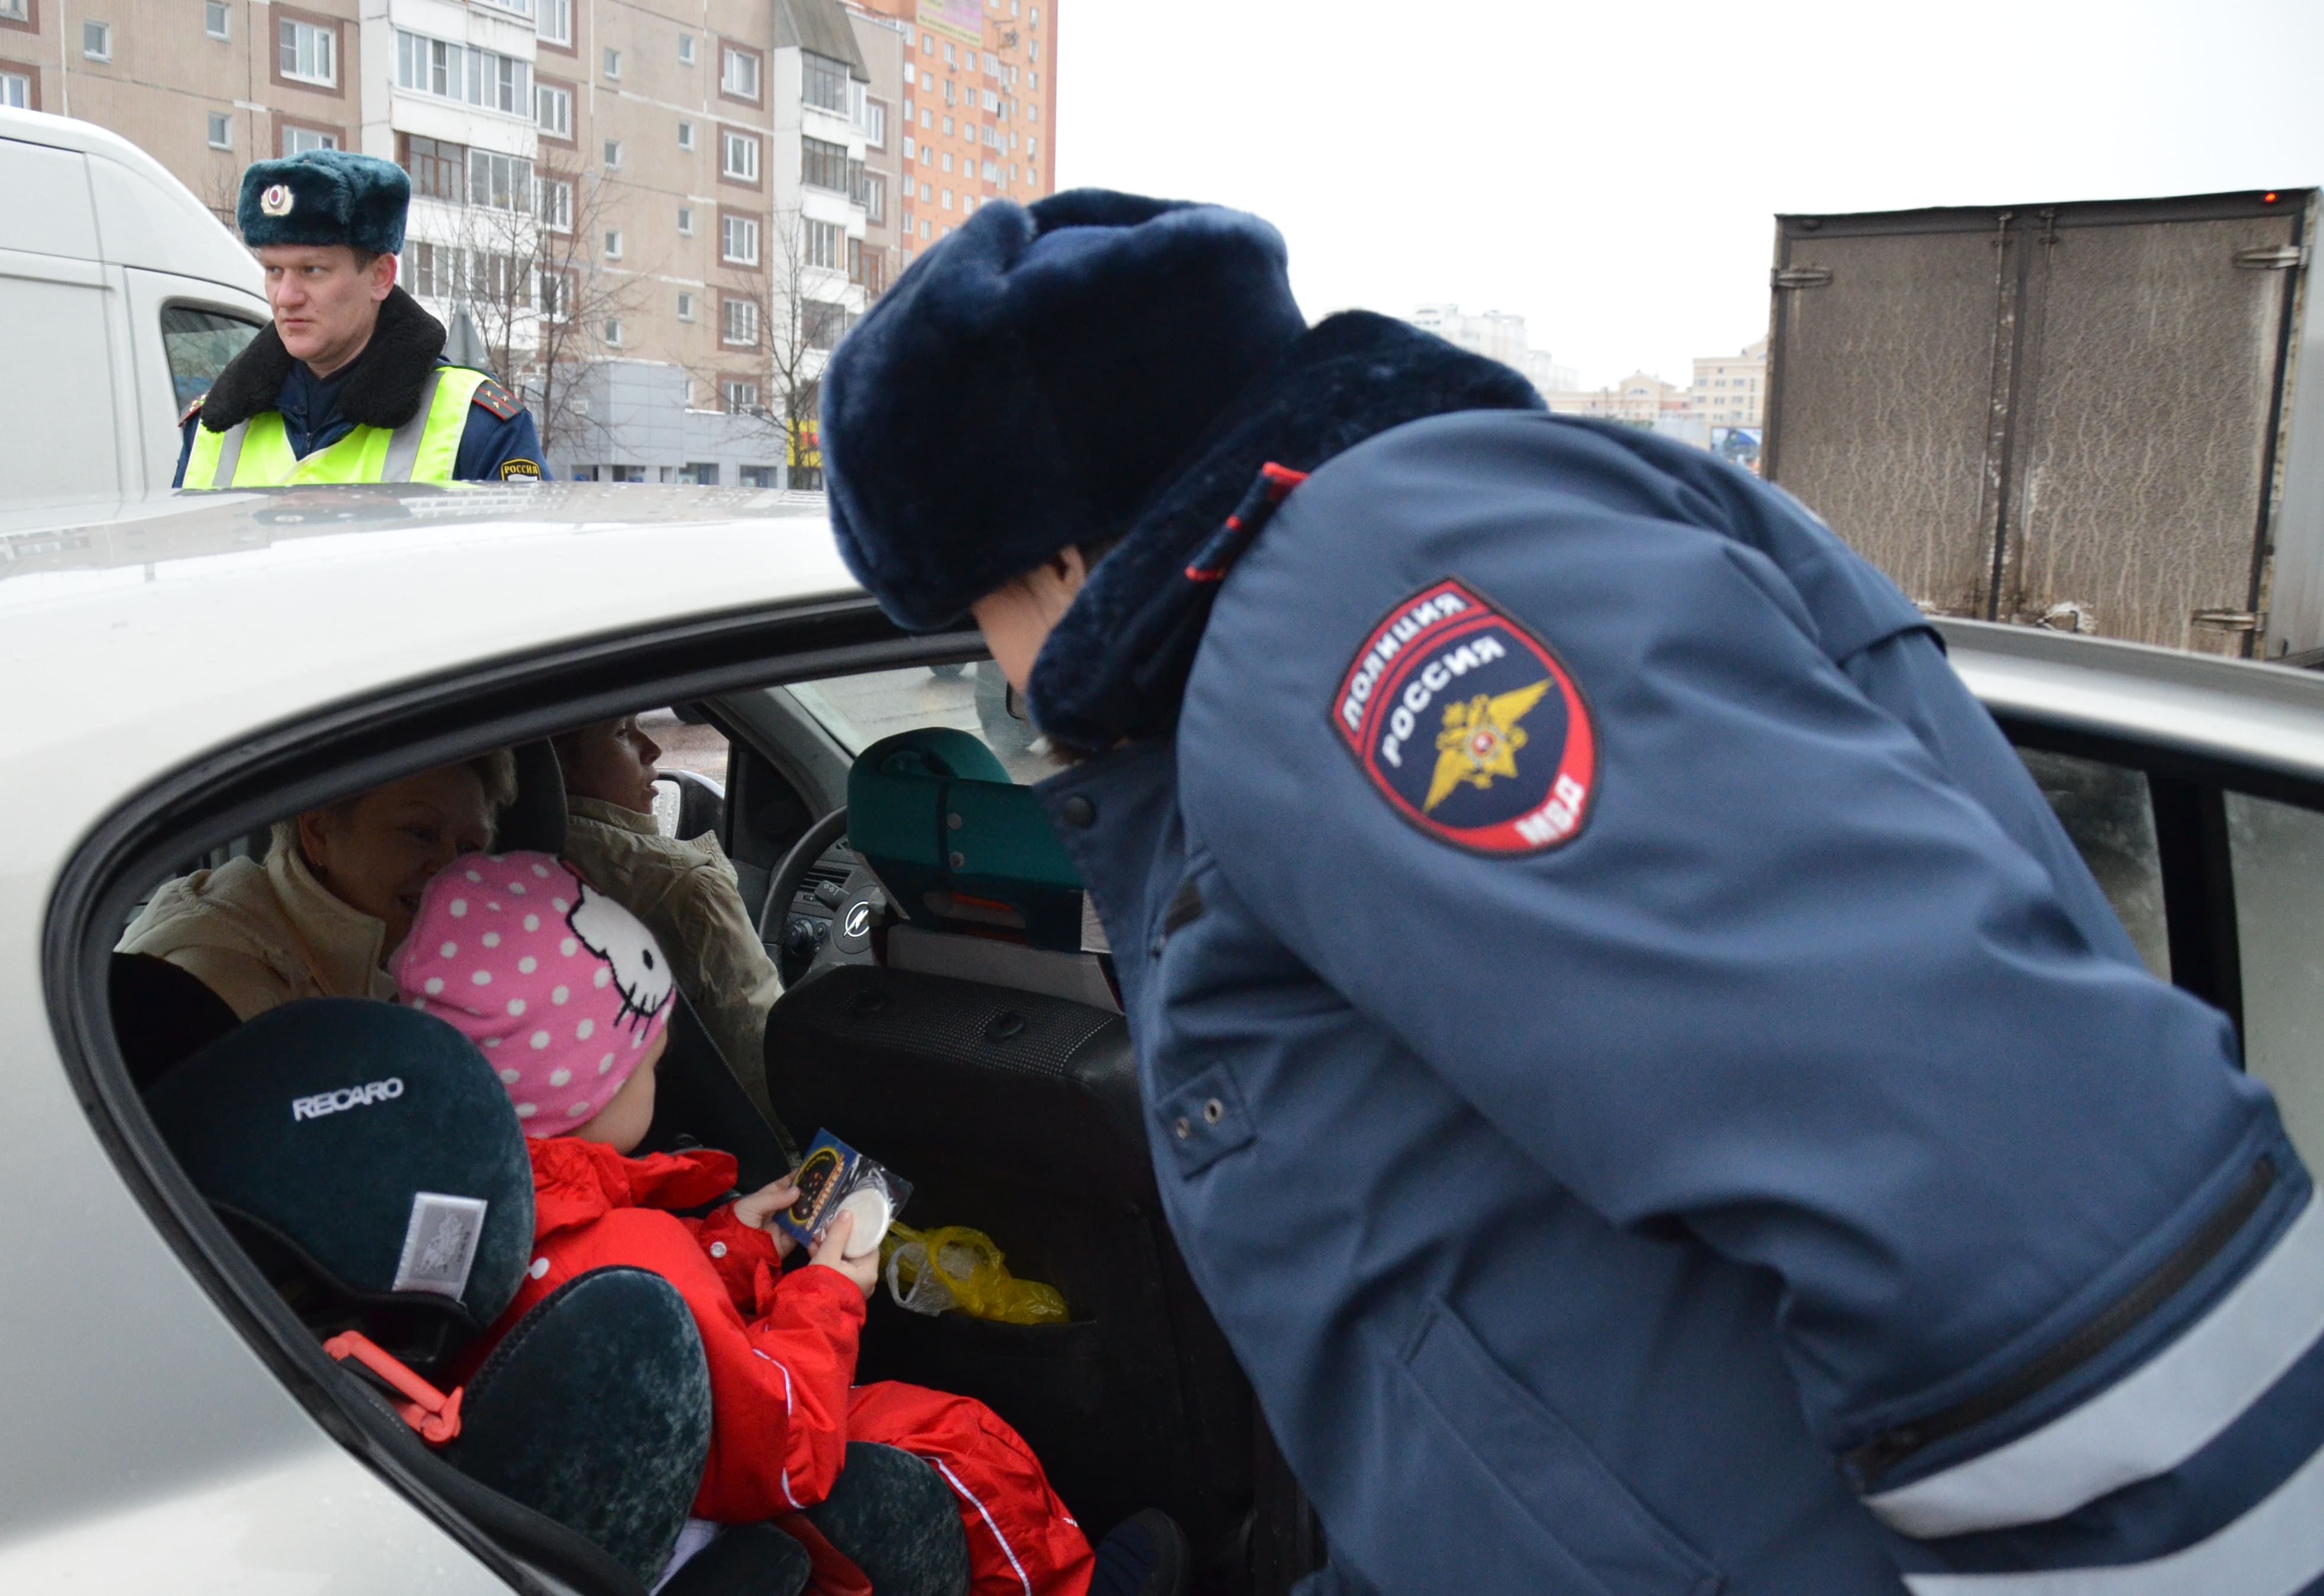  Теперь за перевозку детей будут грозить эти кары: новые штрафы введены в РФ за нарушение ПДД 